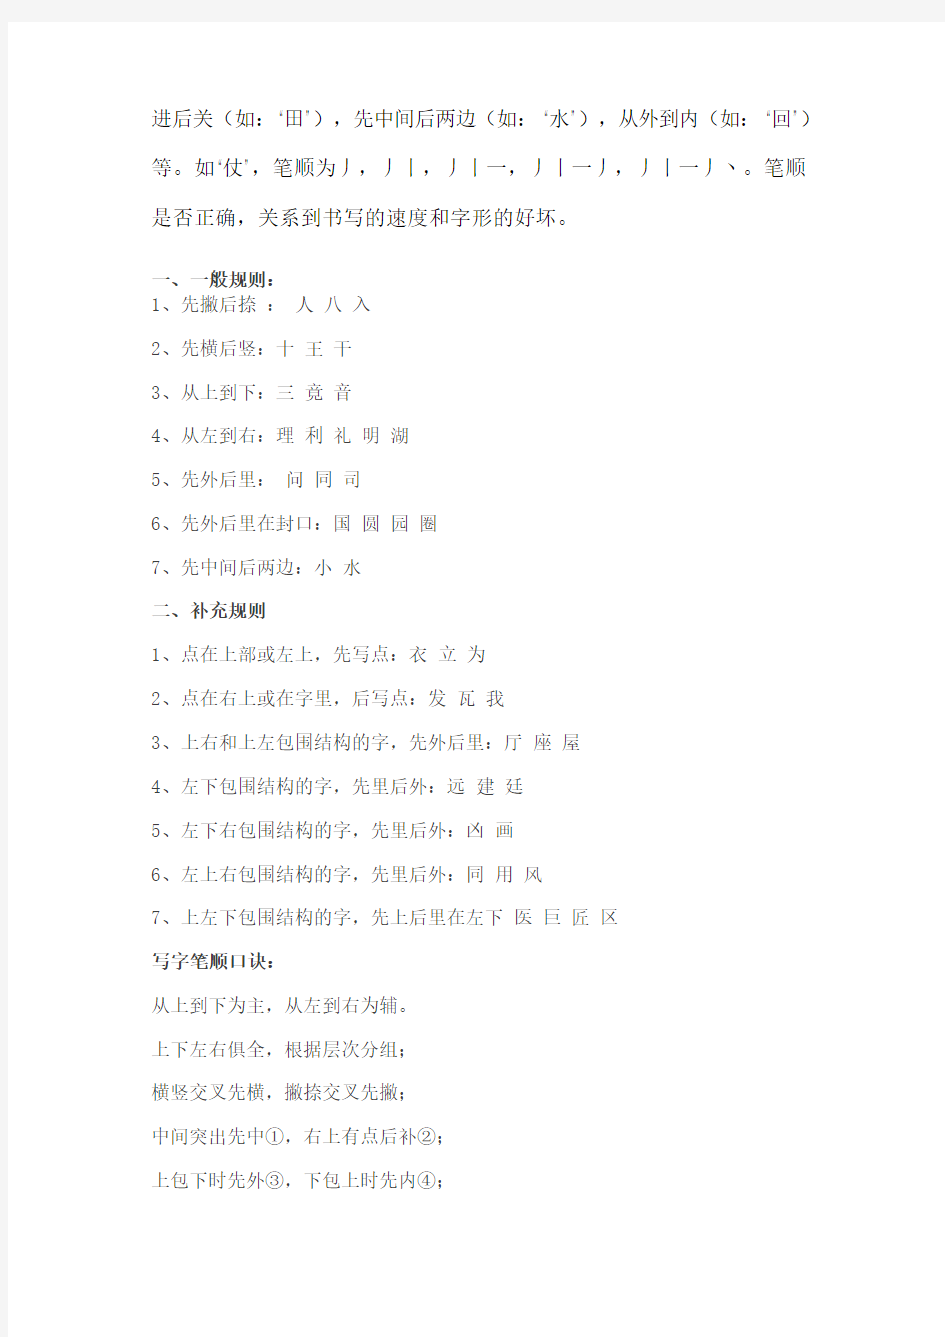 小学生汉字笔顺规则表和笔画名称表